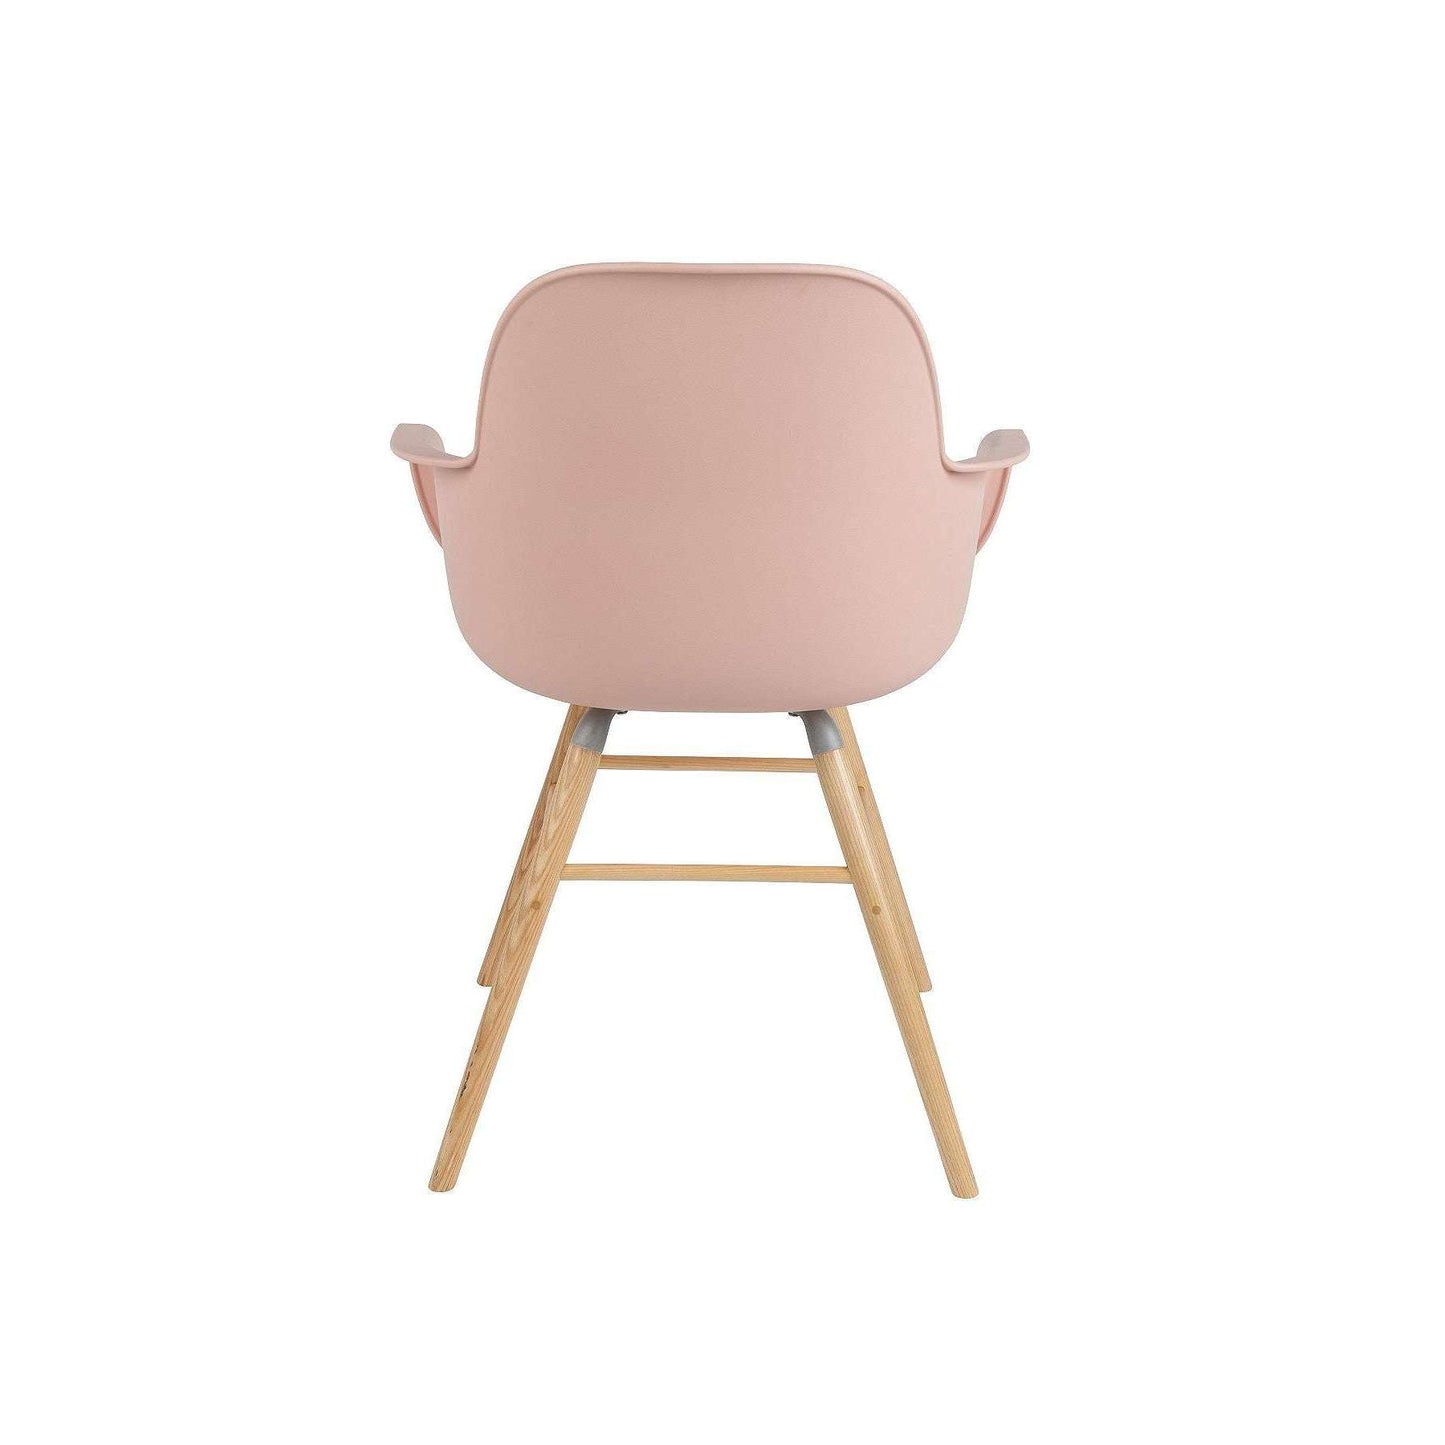 Zuiver stoel met armleuningen albert kuip oud roze 55 x 59 x 81,5 cm